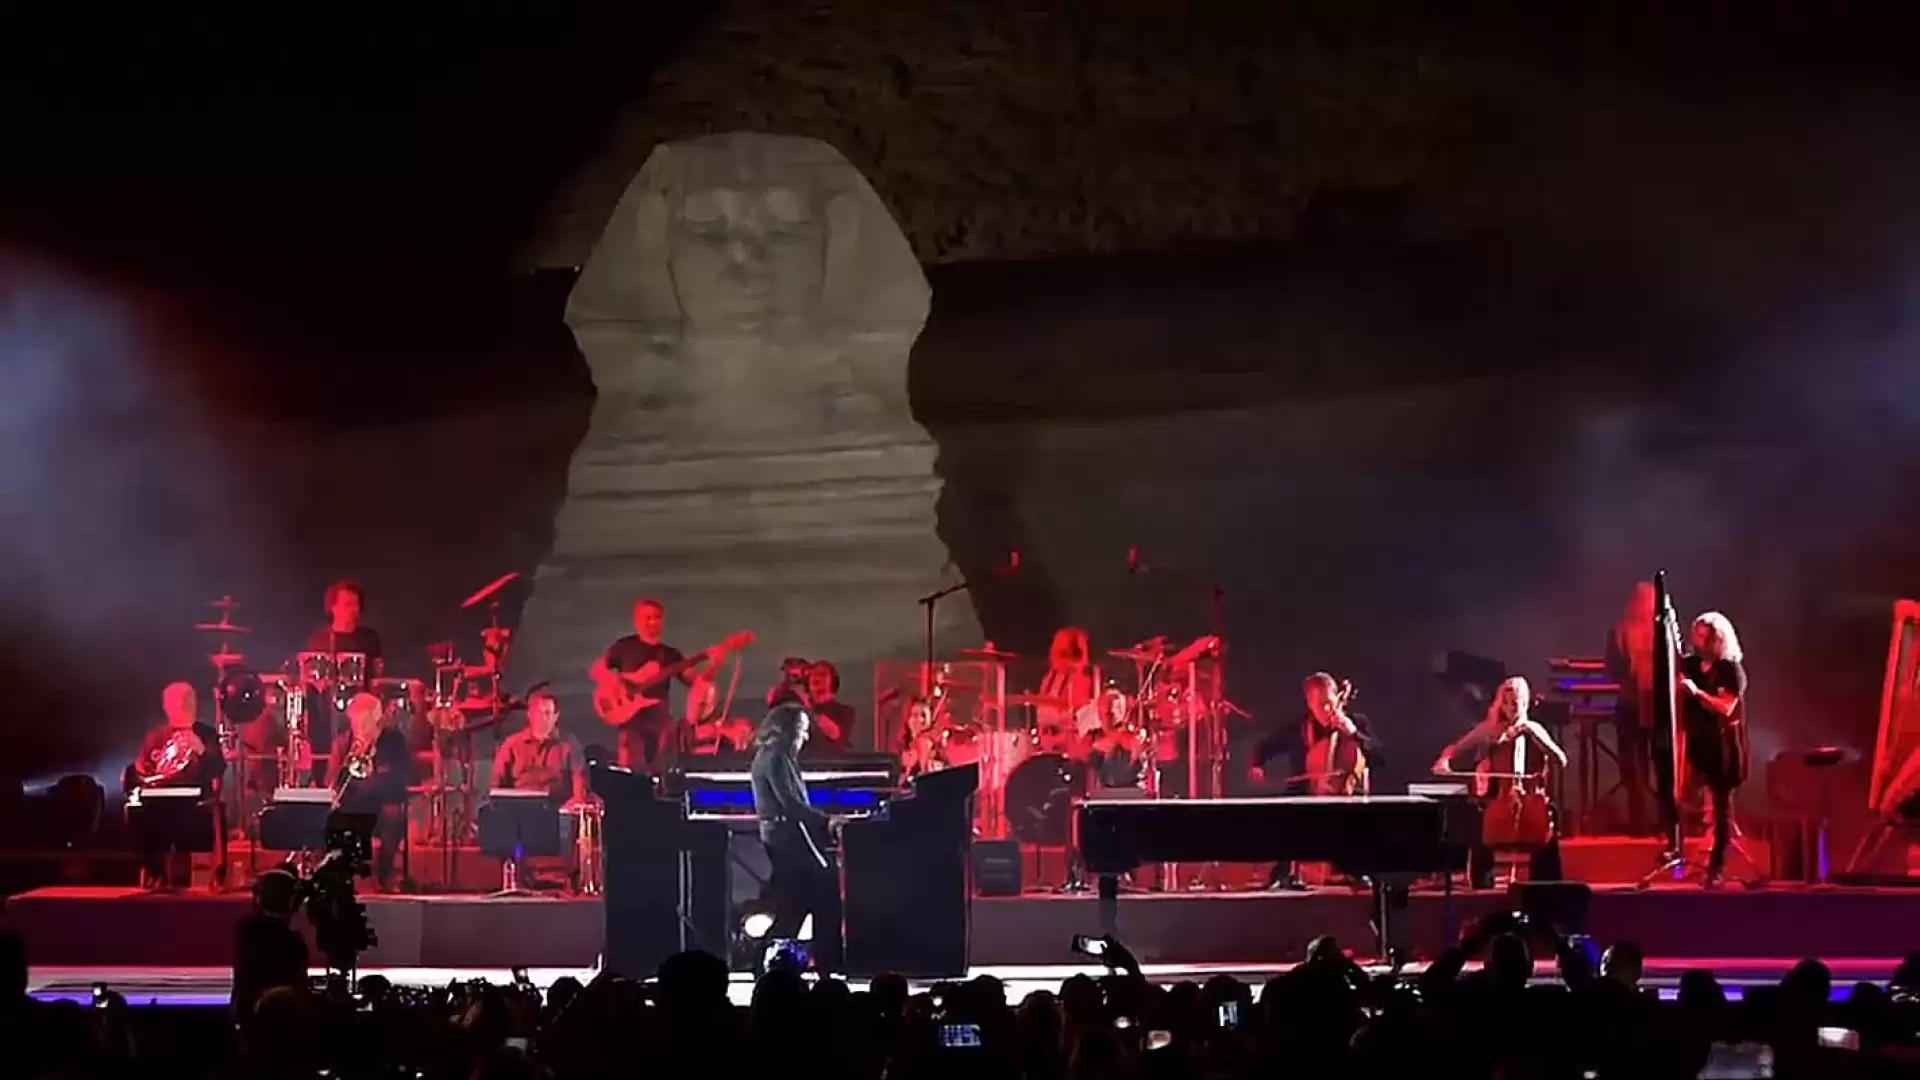 دانلود کنسرت Yanni – The Dream Concert: Live from the Great Pyramids of Egypt 2016 (یانی - کنسرت رویایی: پخش زنده از اهرام بزرگ مصر)